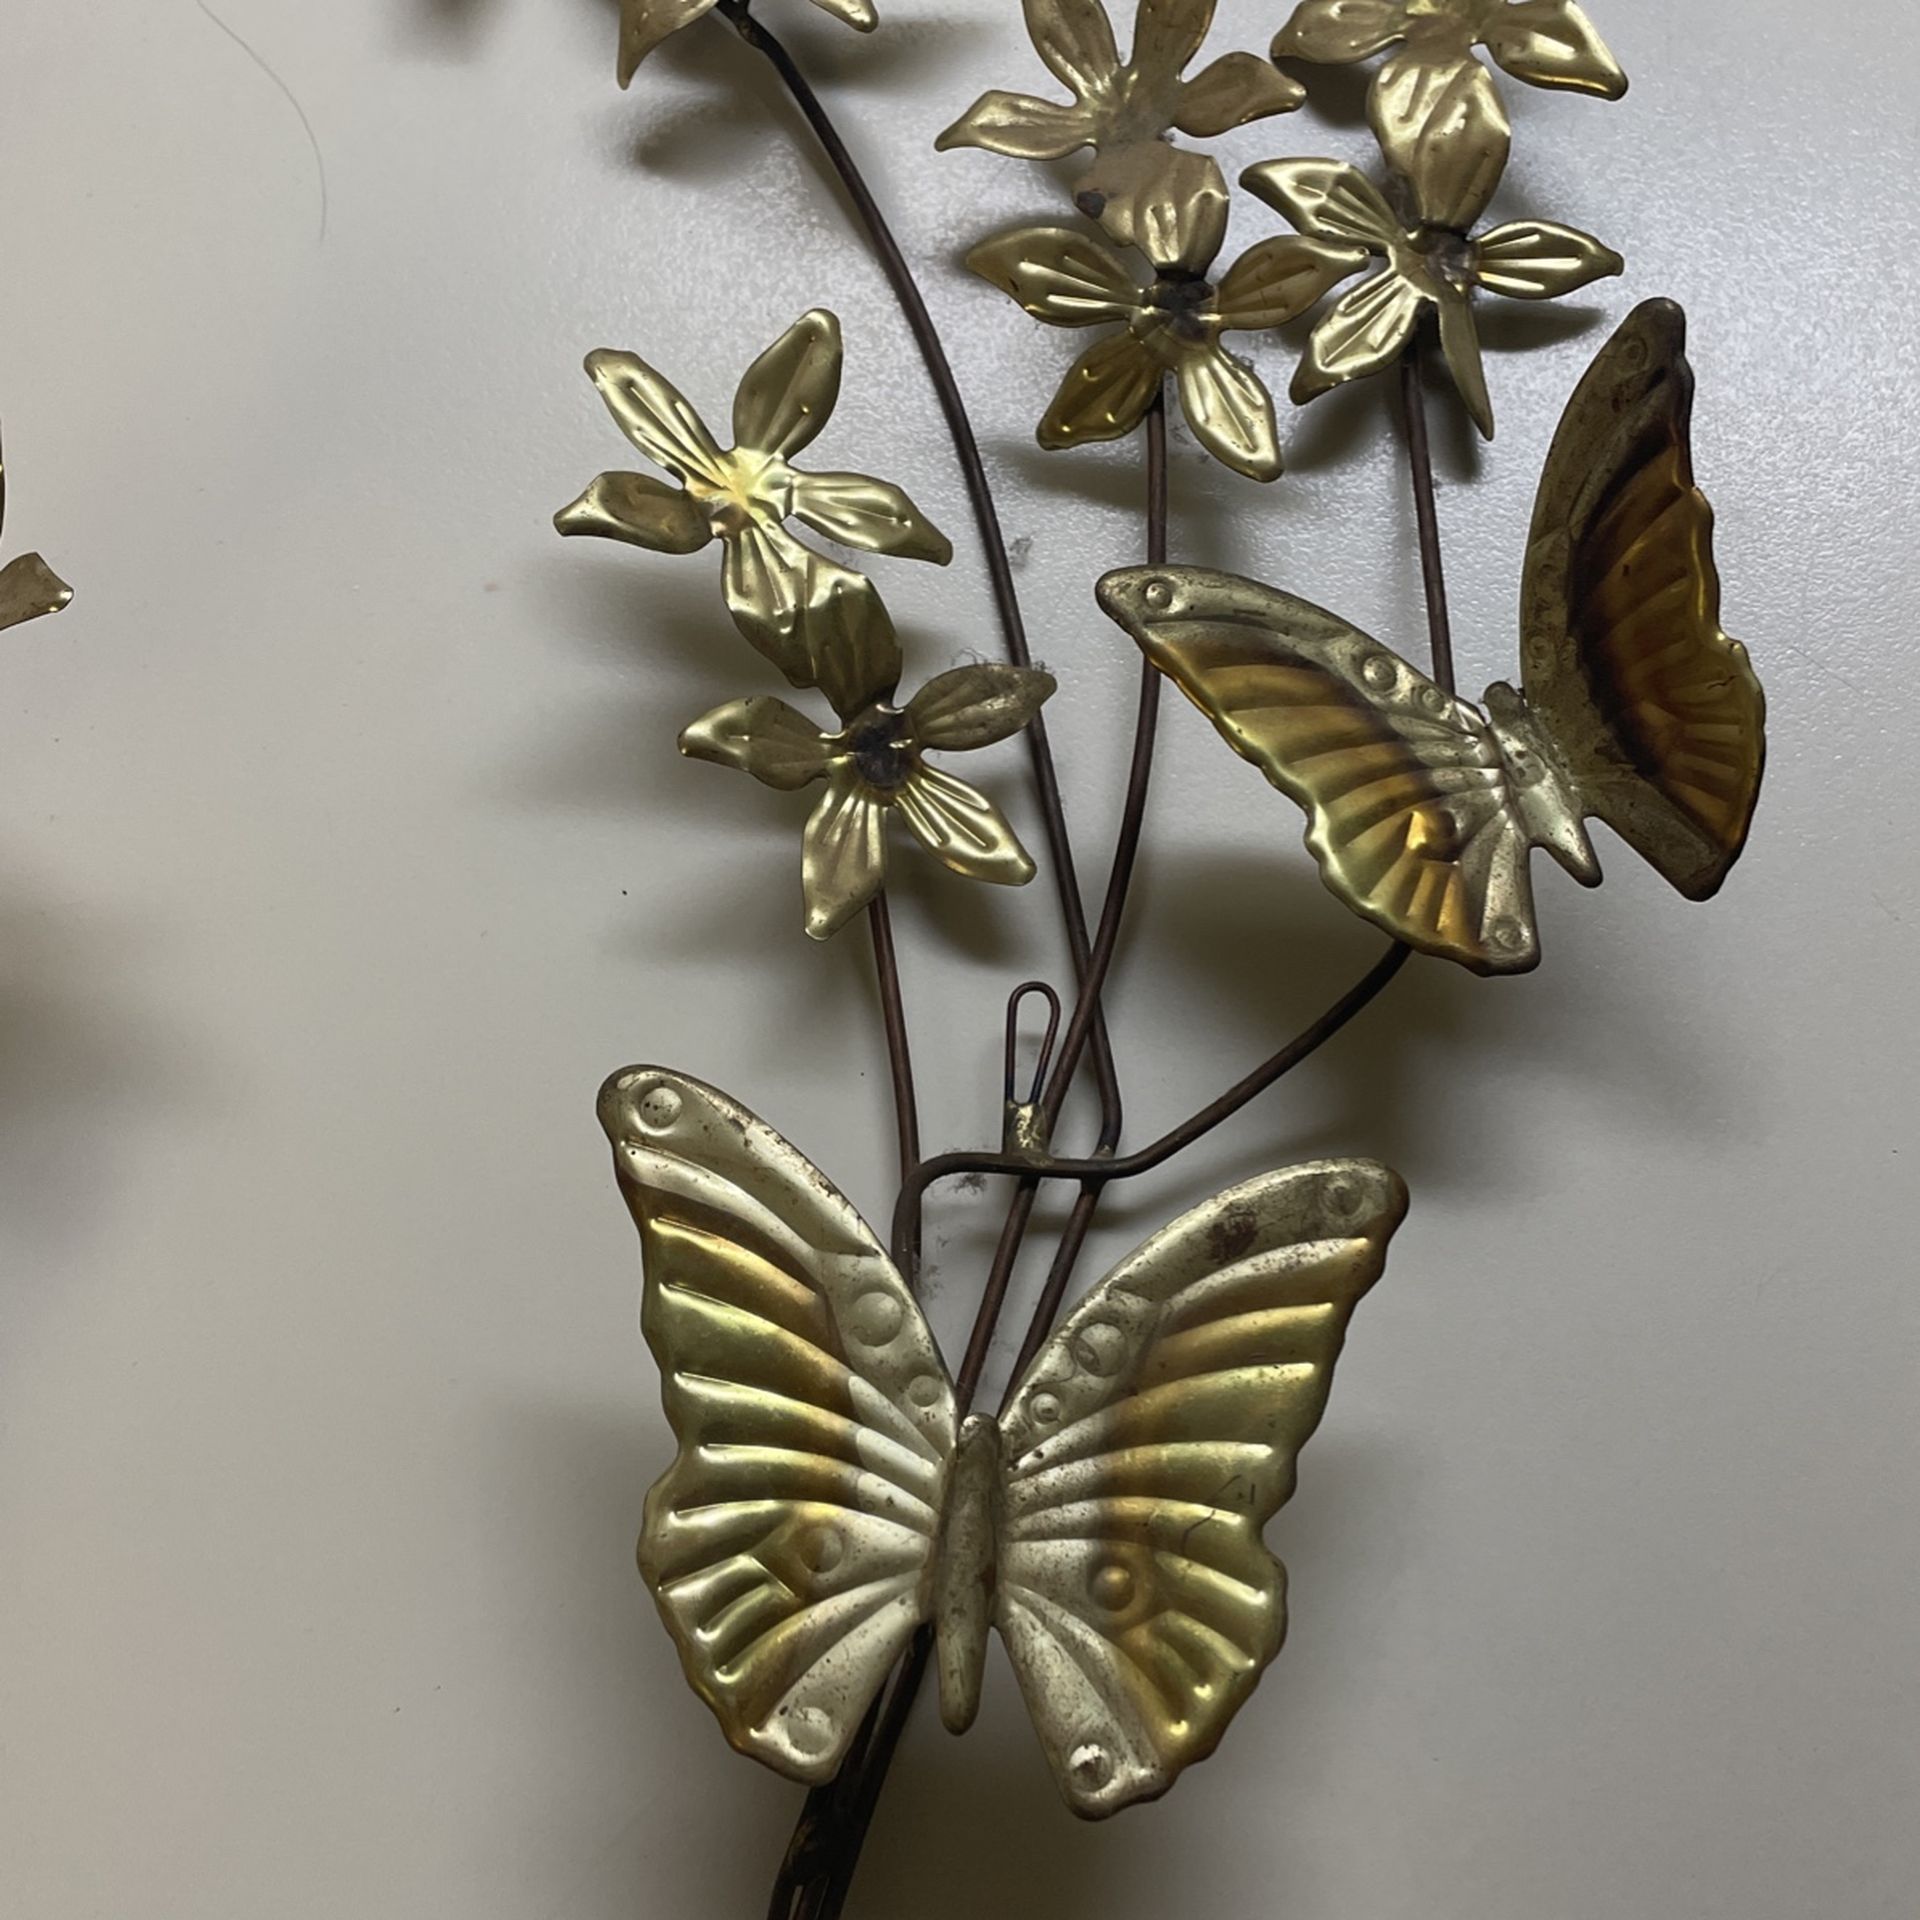 Brass Butterflies Wall Decor for Sale in Mesa, AZ - OfferUp